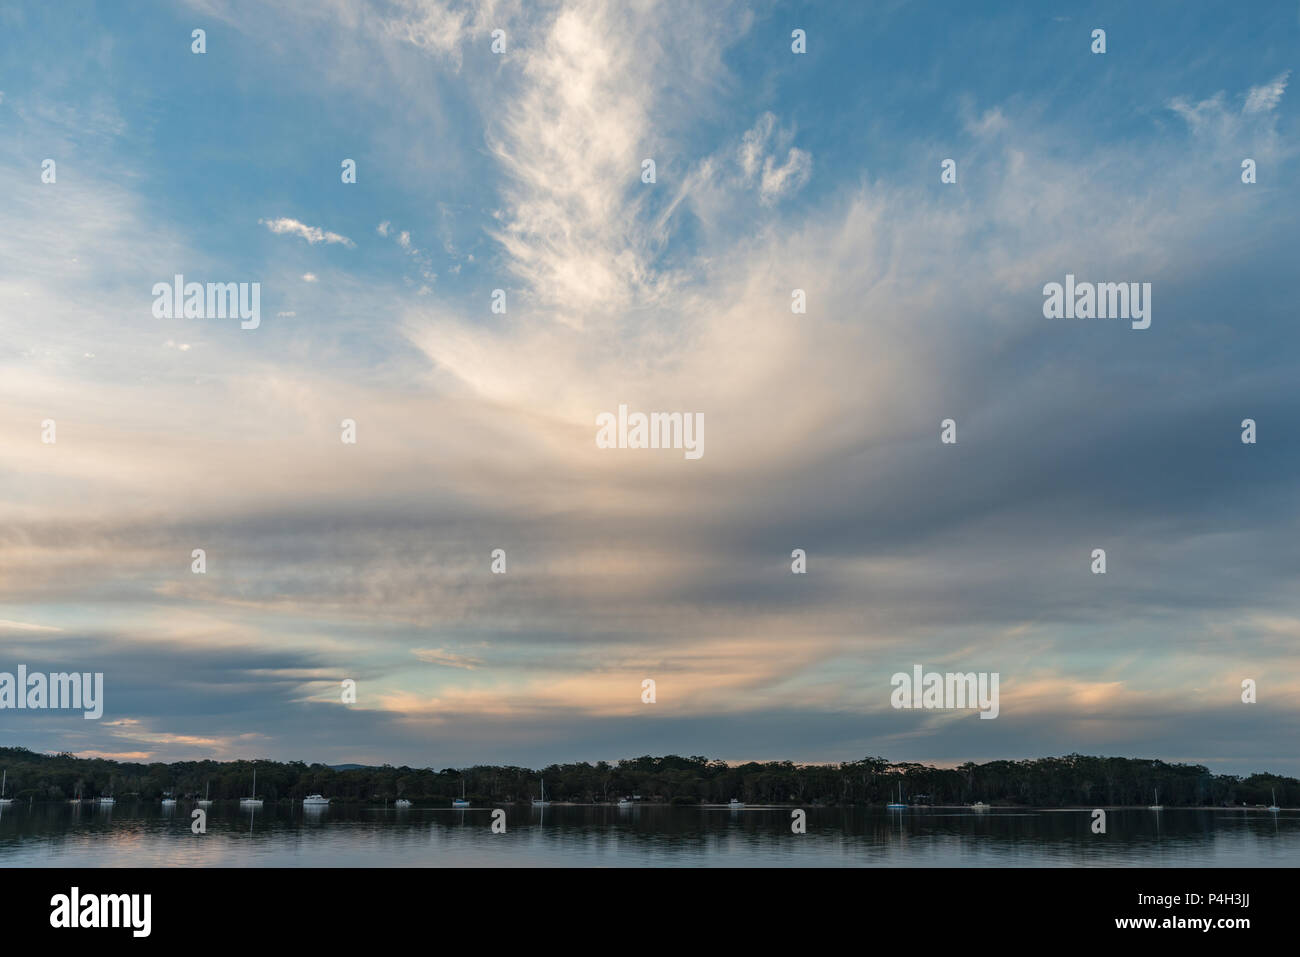 Landschaft Mit Moody Wolken Fur Einen Hintergrund Oder Austausch Der Himmel In Photoshop Composite Stockfotografie Alamy